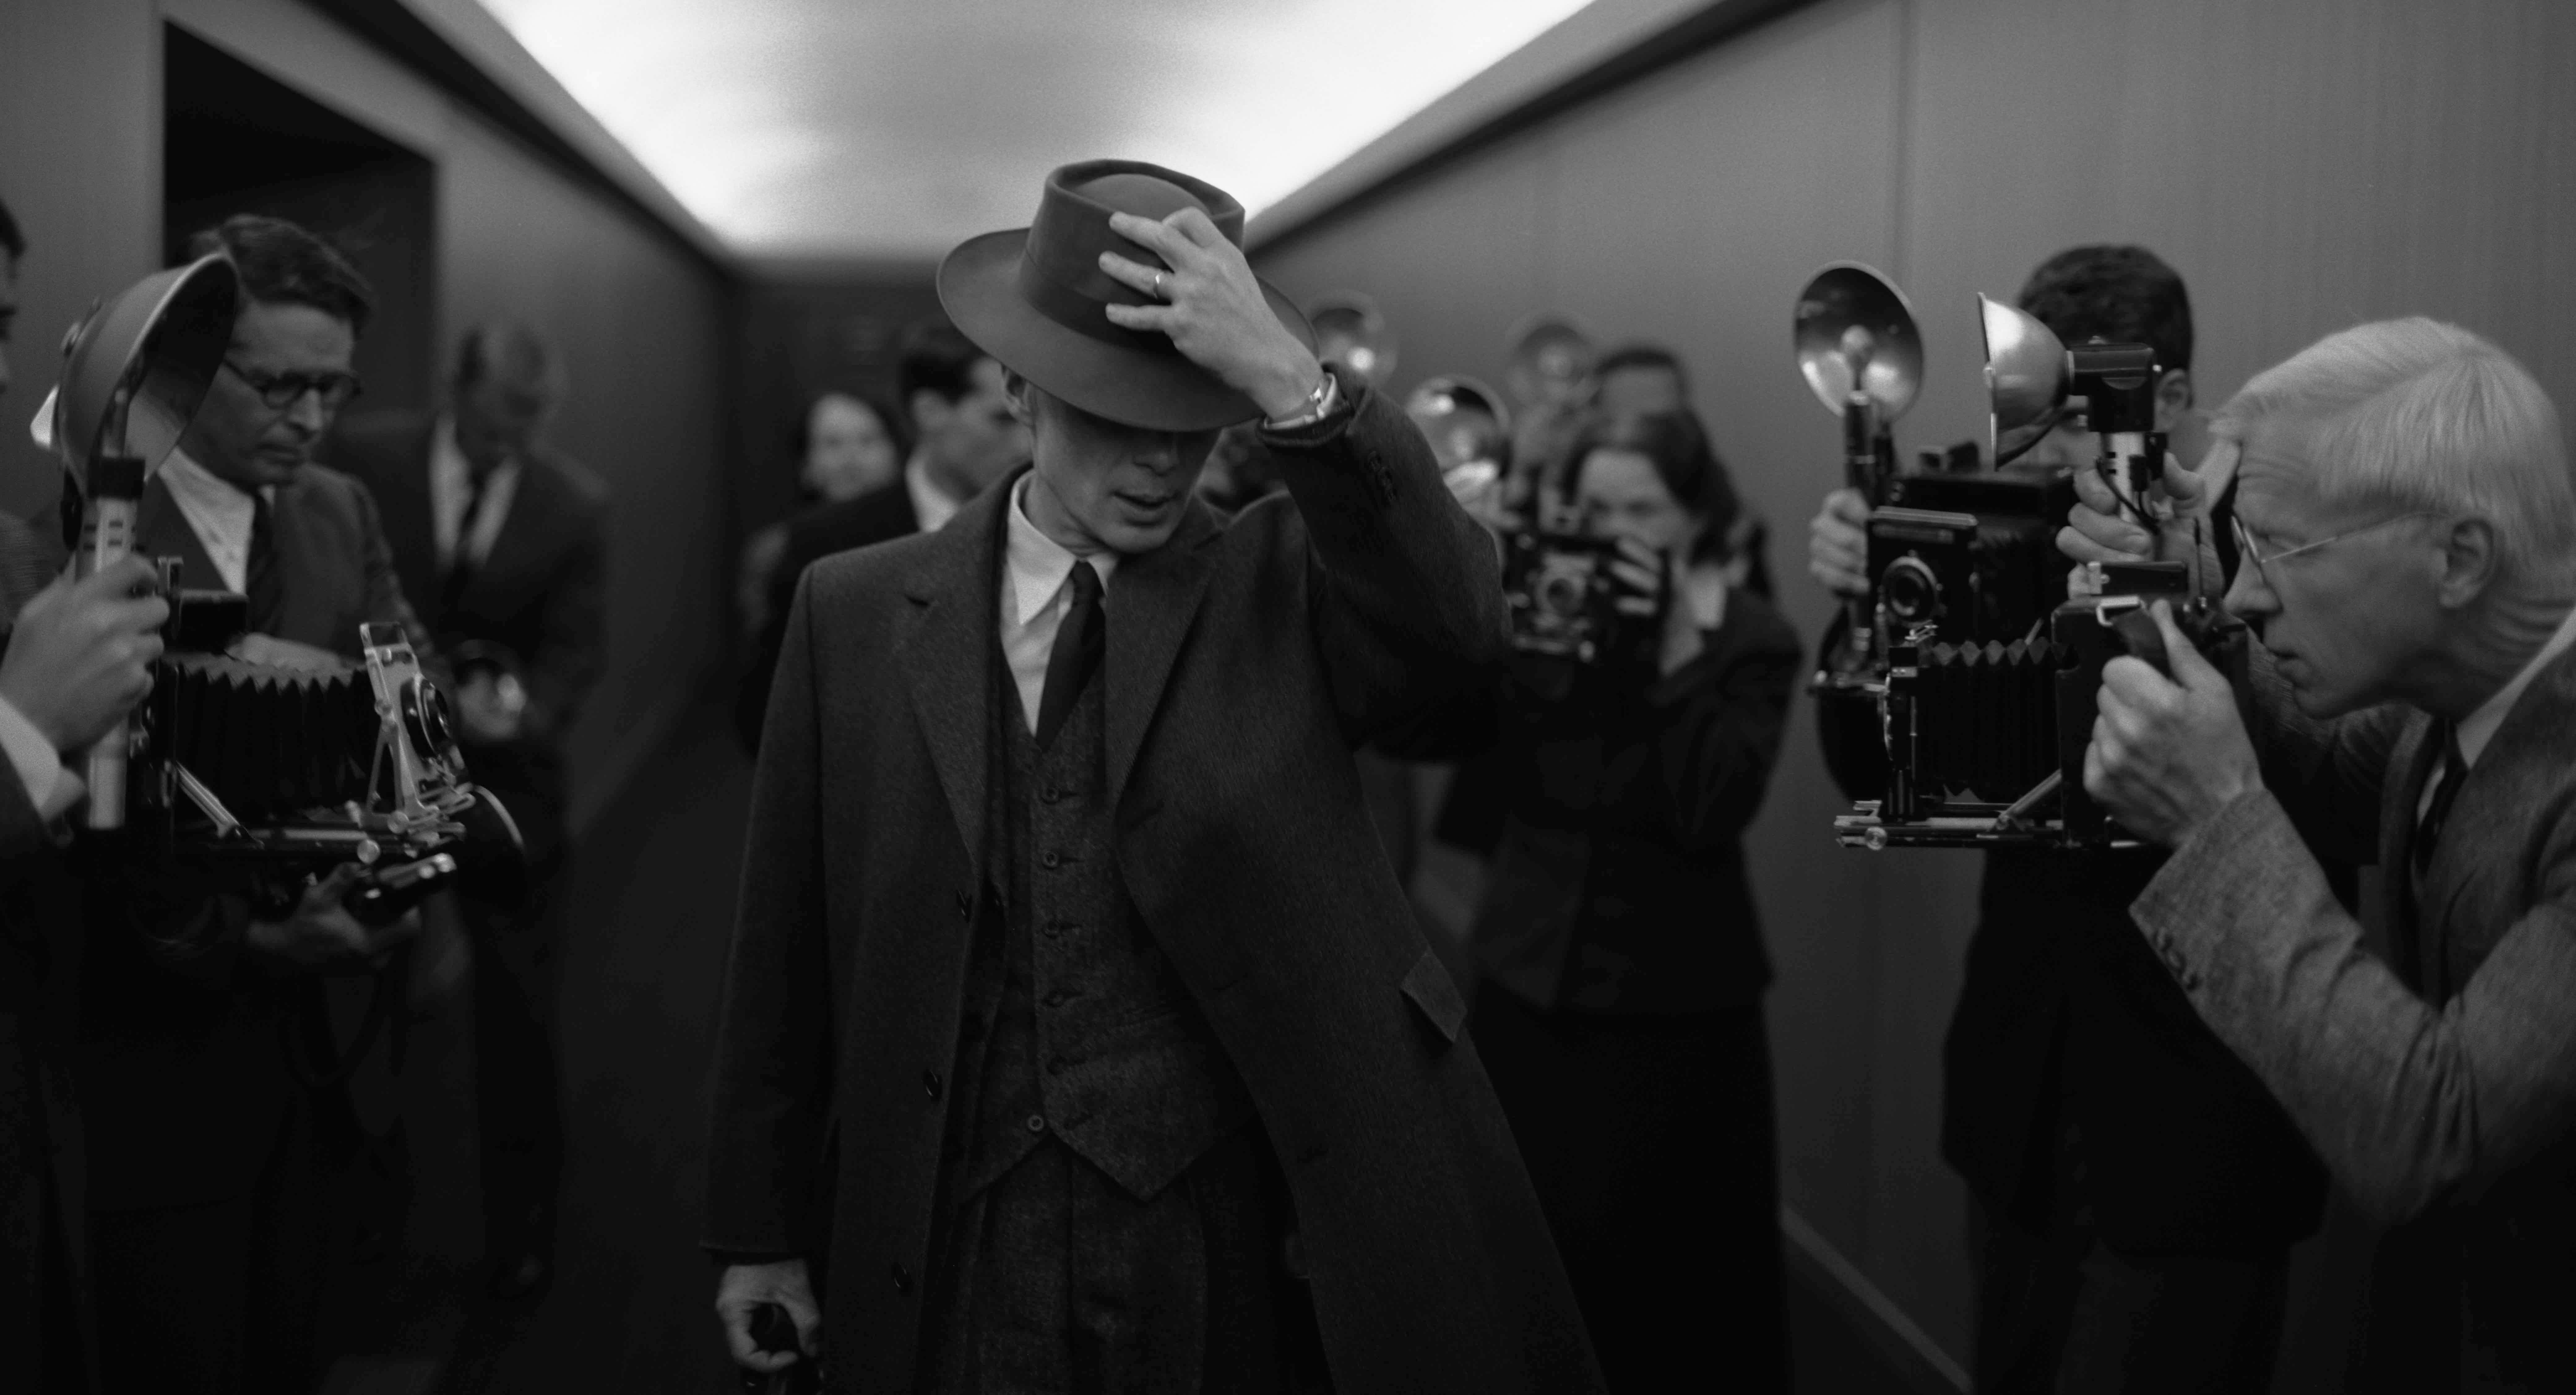 Cillian Murphy as J. Robert Oppenheimer in 'Oppenheimer' written and directed by Christopher Nolan.